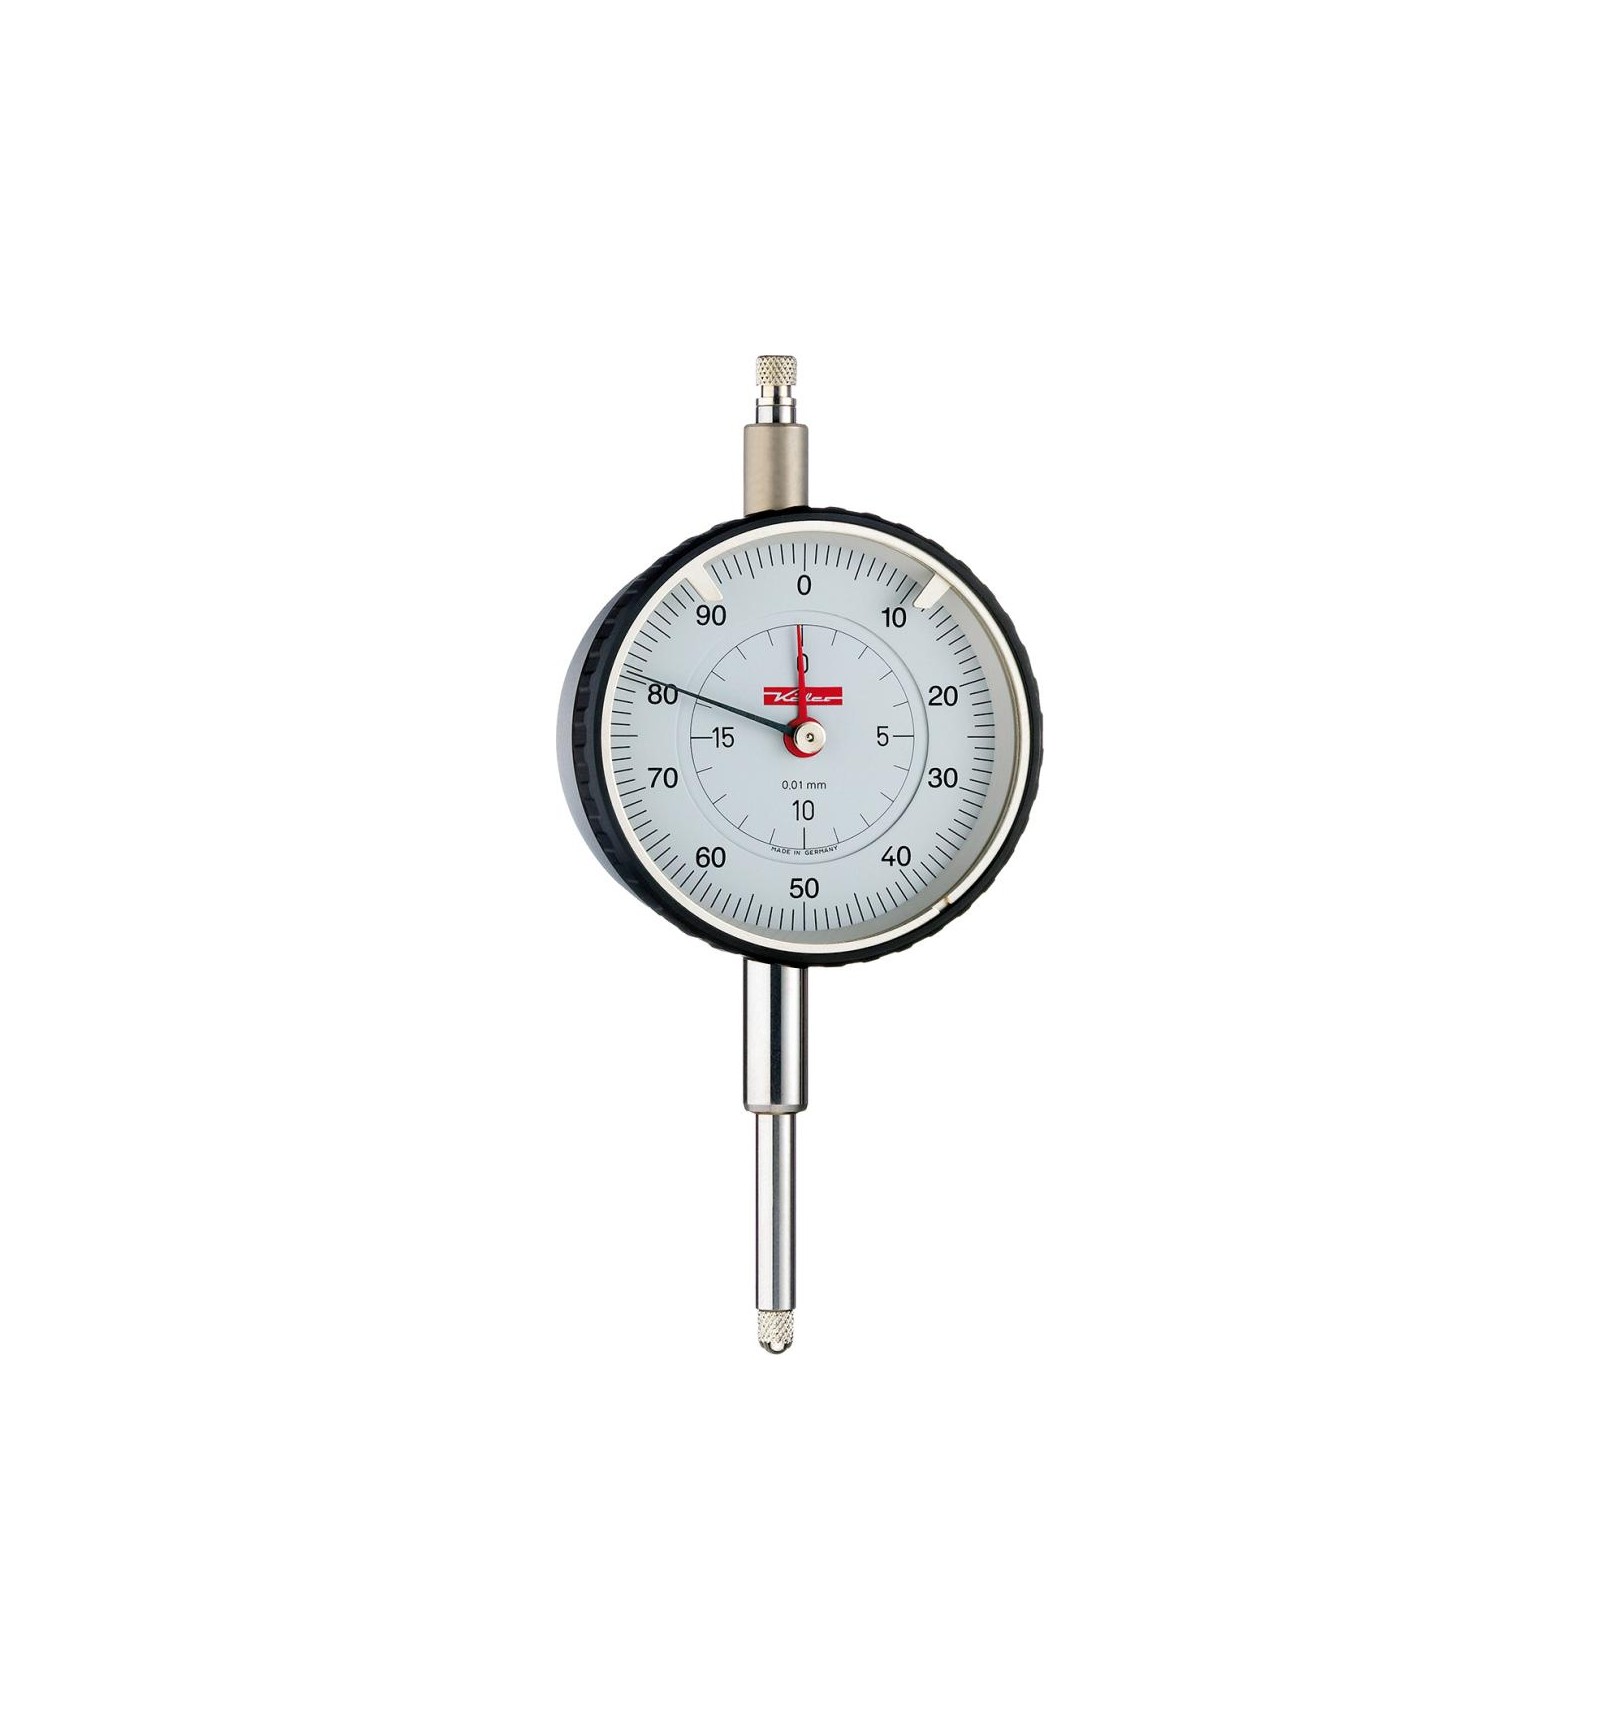 Reloj comparador con soporte magnético. 0 - 10 mm. Lectura de 0.01 mm.